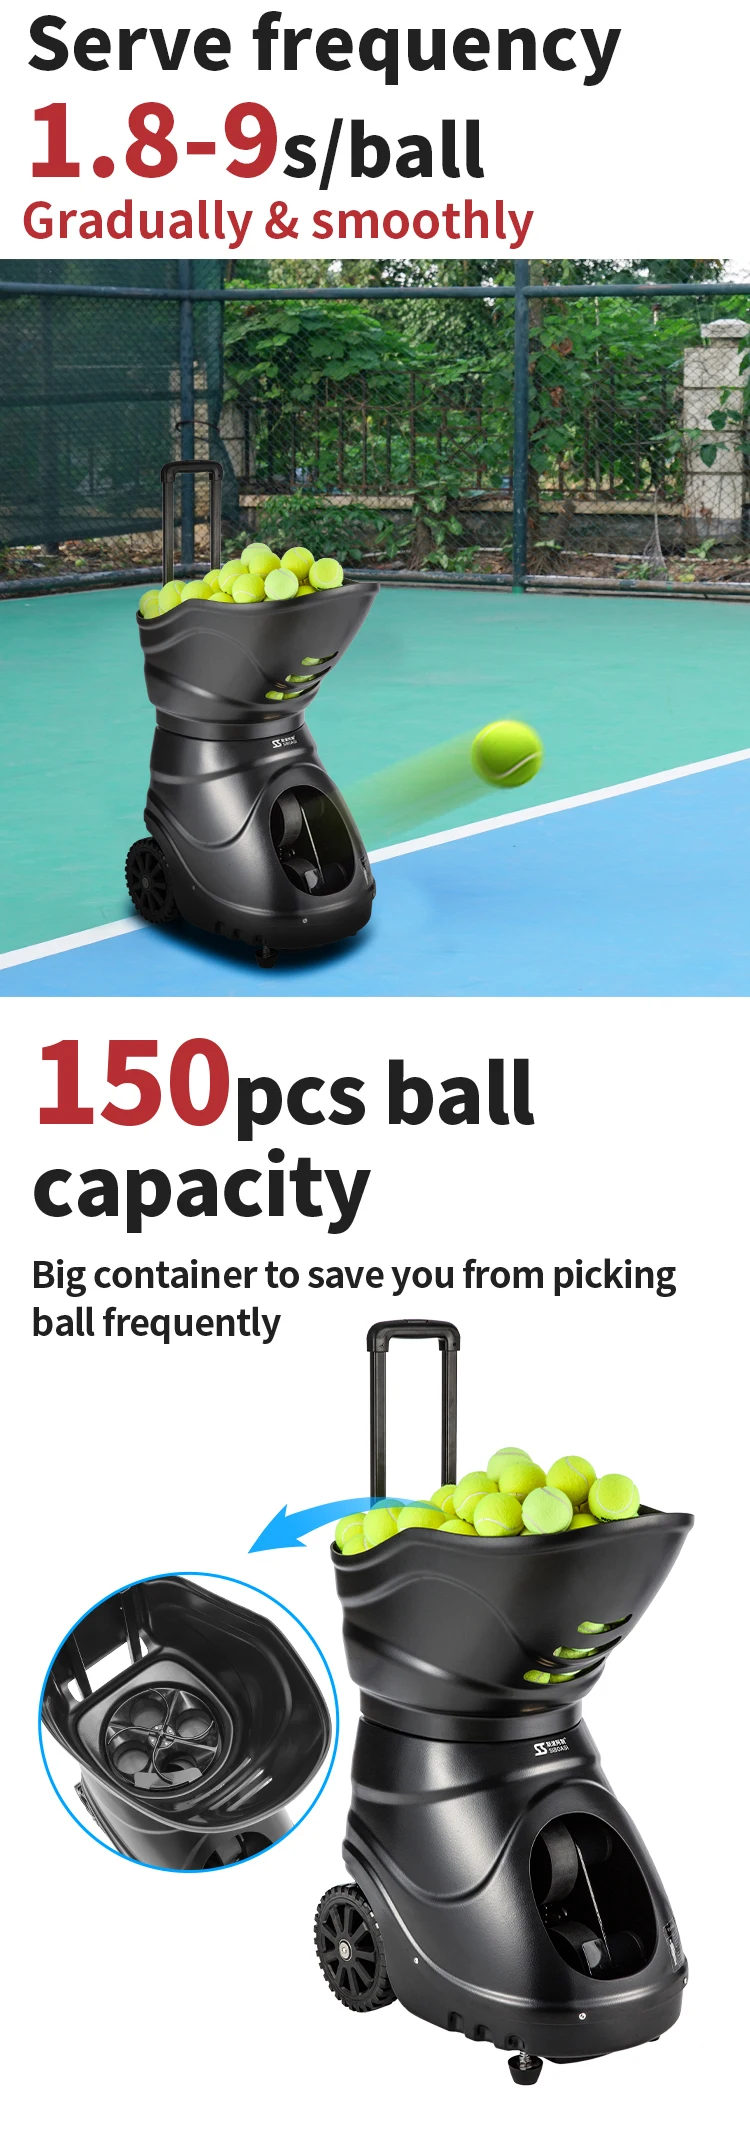 tennis practice equipment